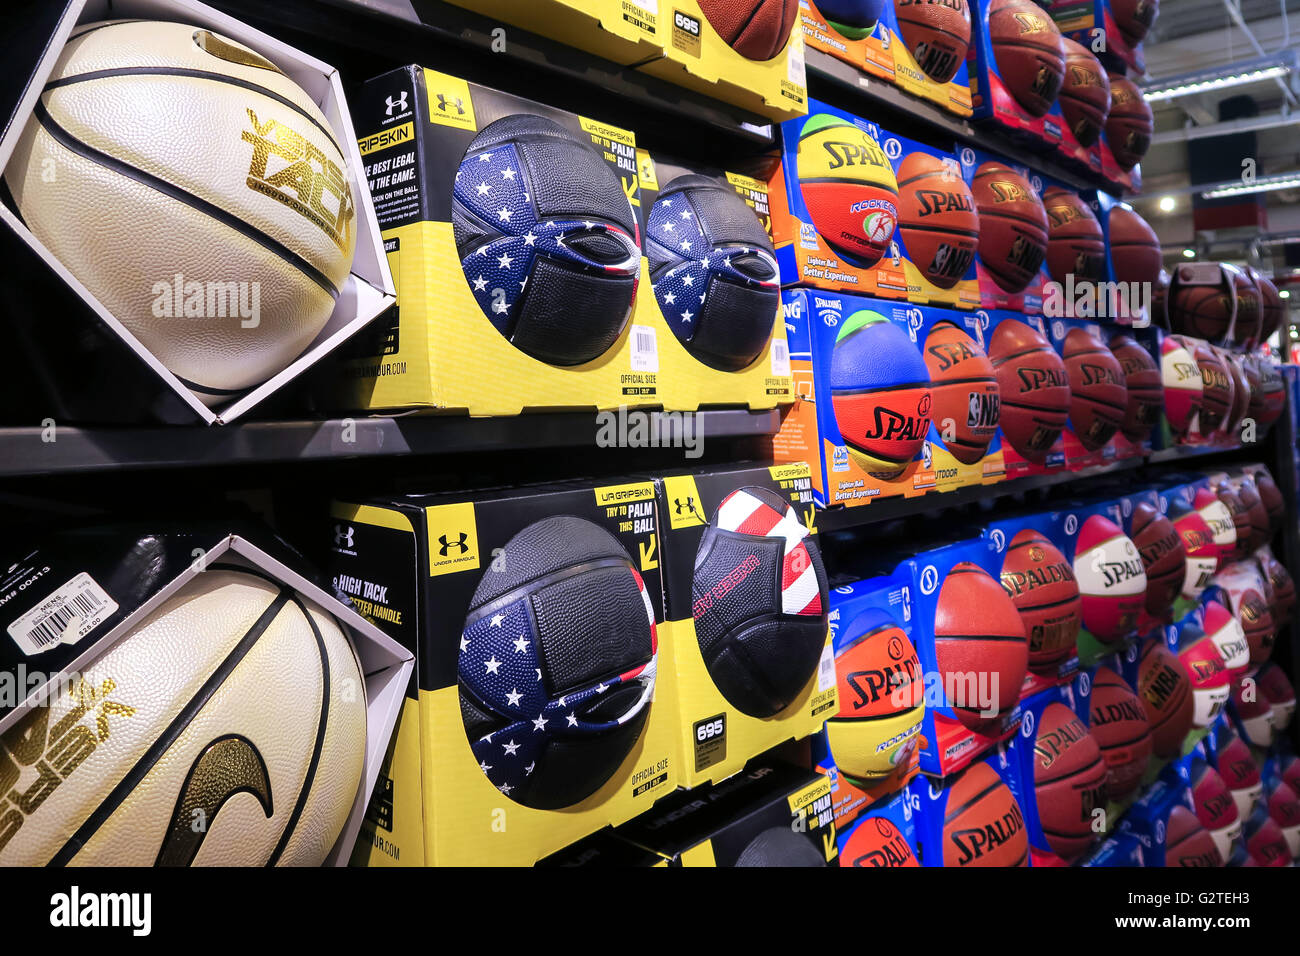 Interni del negozio di articoli sportivi di Modell's, con palline Nike con logo Swoosh, New York Foto Stock